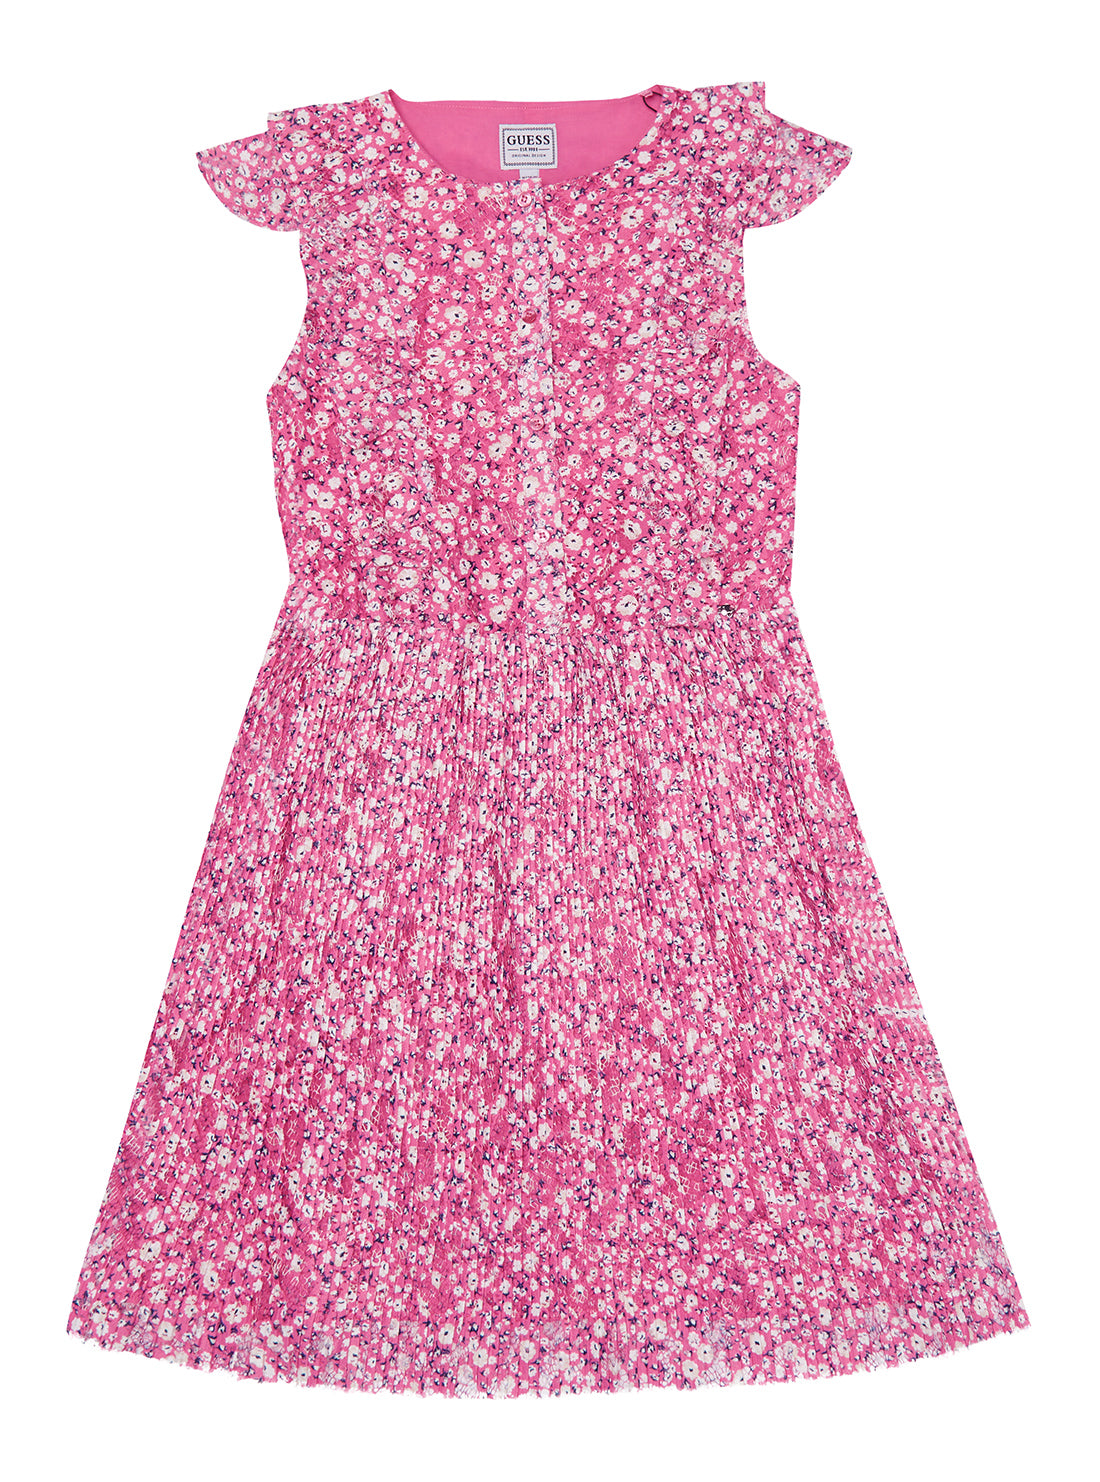 Pink Floral Lace Dress (6-14)